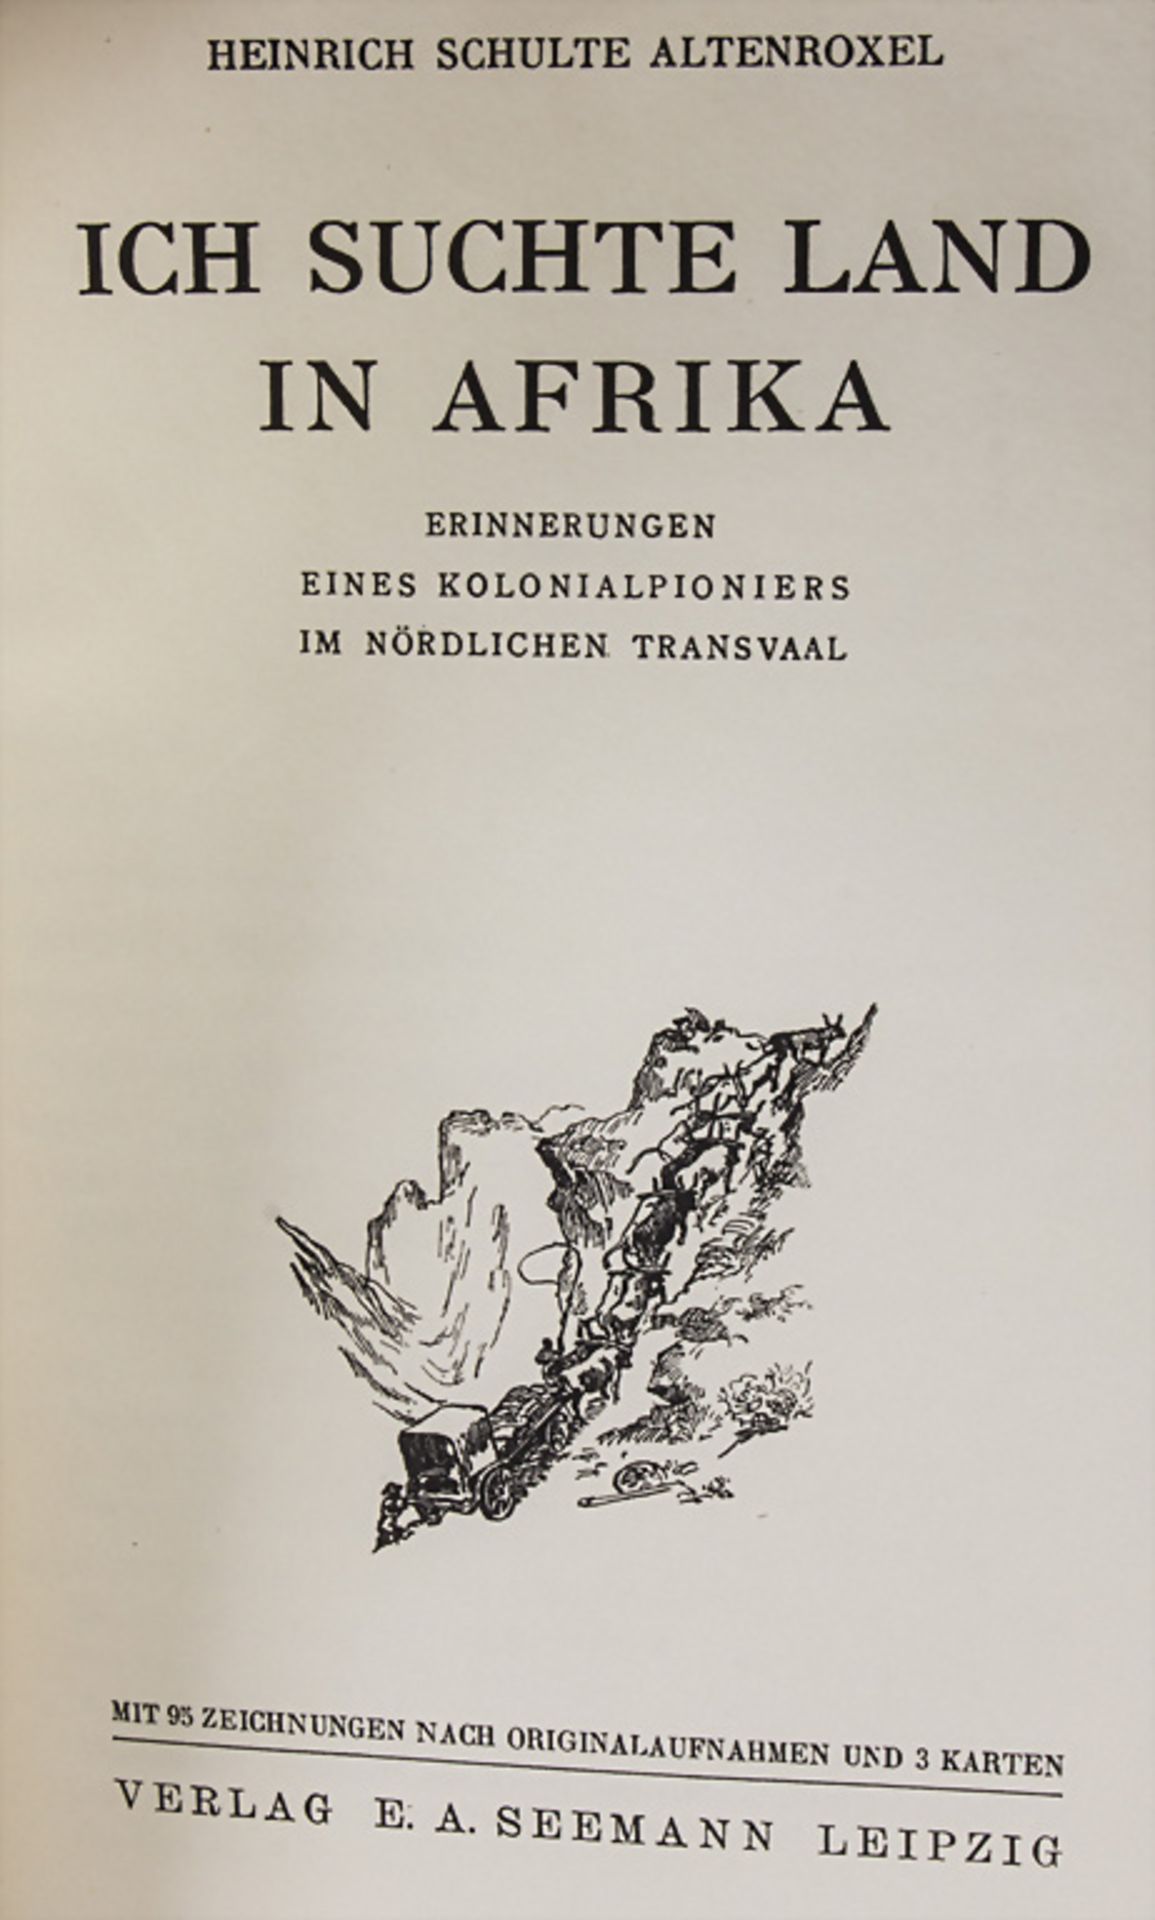 Heinrich Schulte-Altenroxel, 'Ich suchte Land in Afrika', 1942